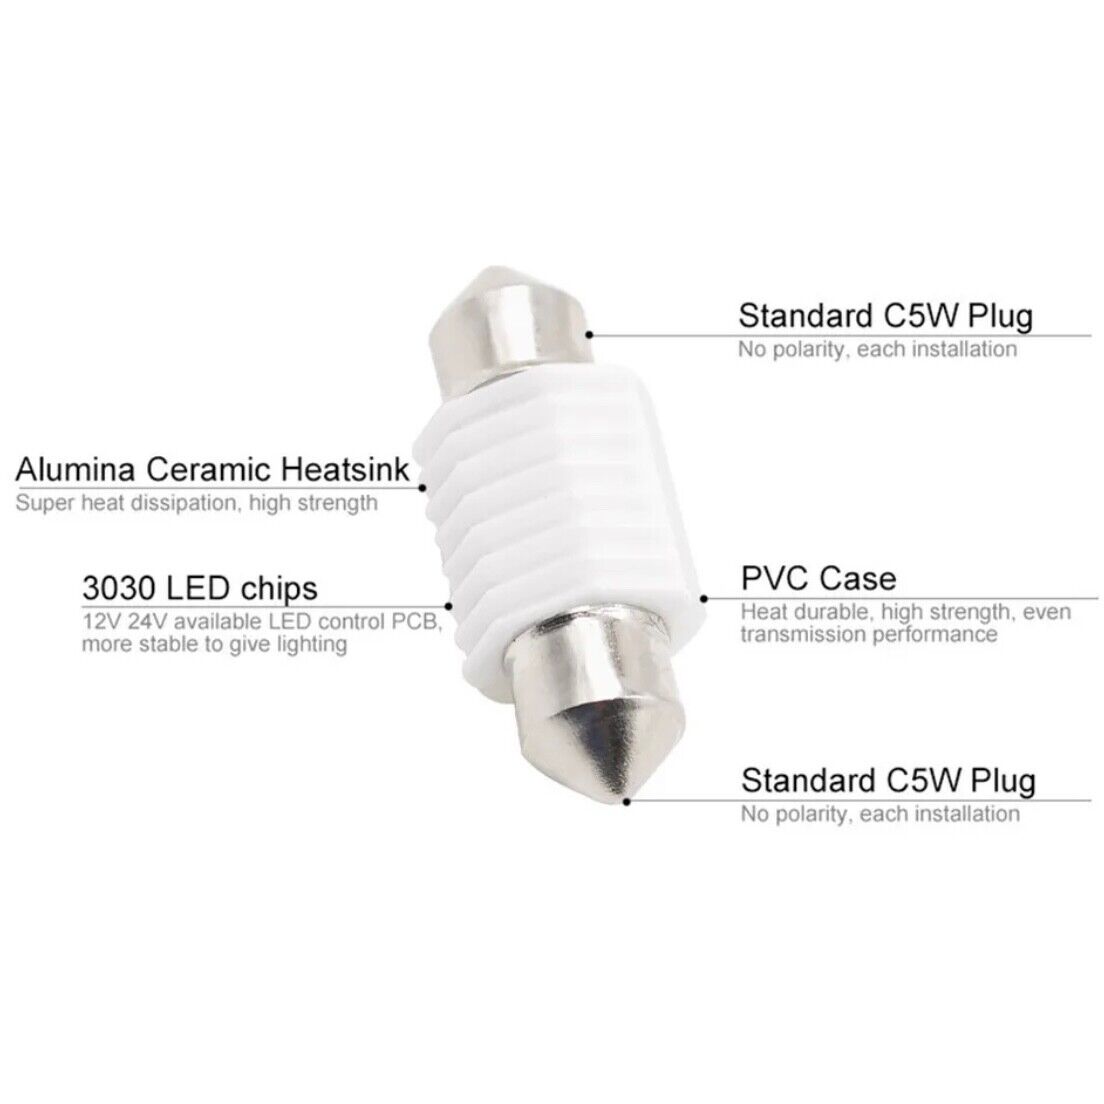 10 Pack LED DE3175 Bulb 31mm LED Festoon 12V CANBus Error Free Super Bright